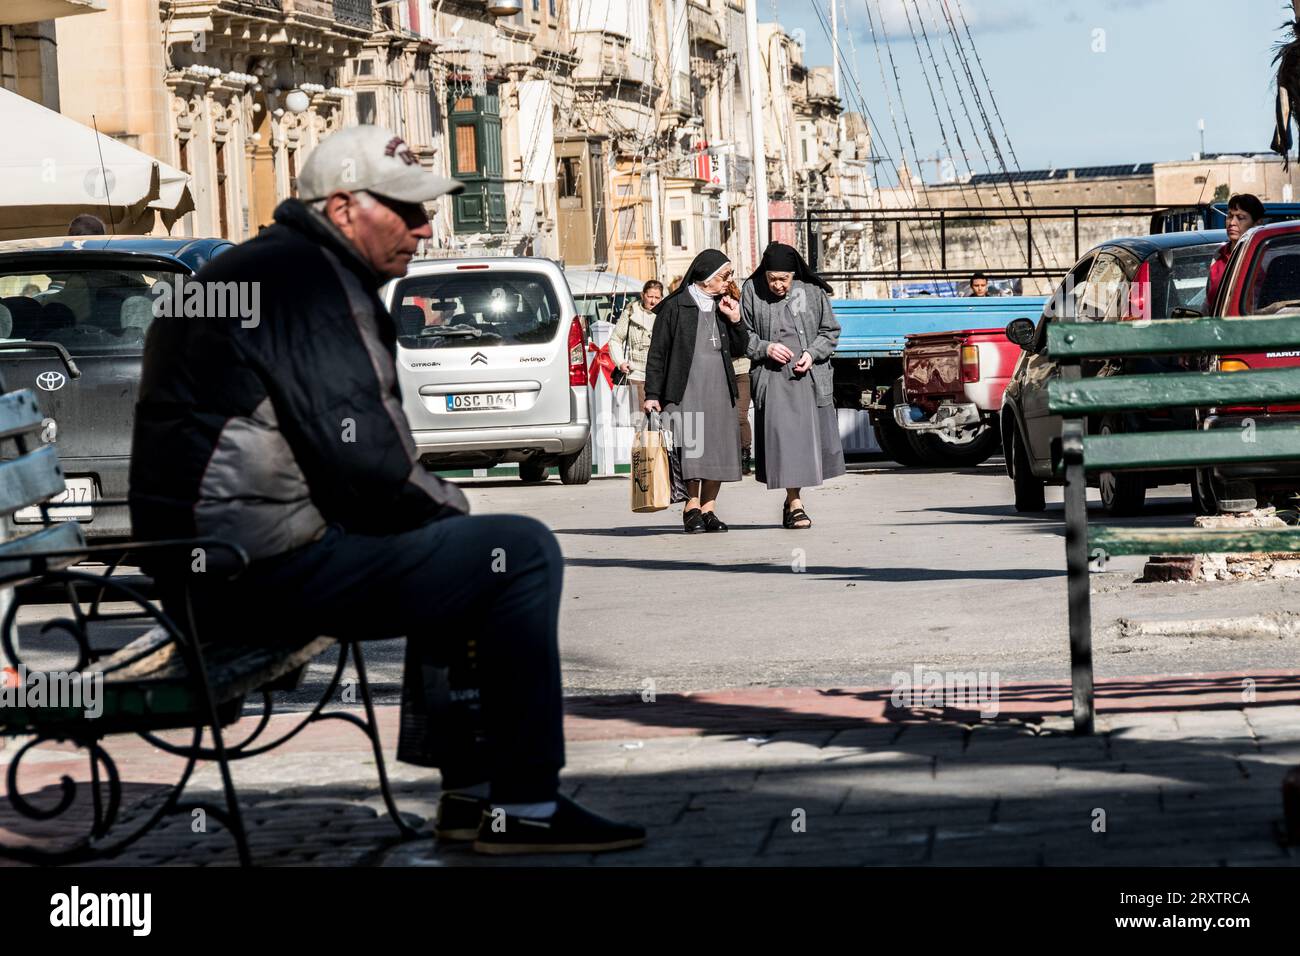 A quiet scene in Malta Stock Photo